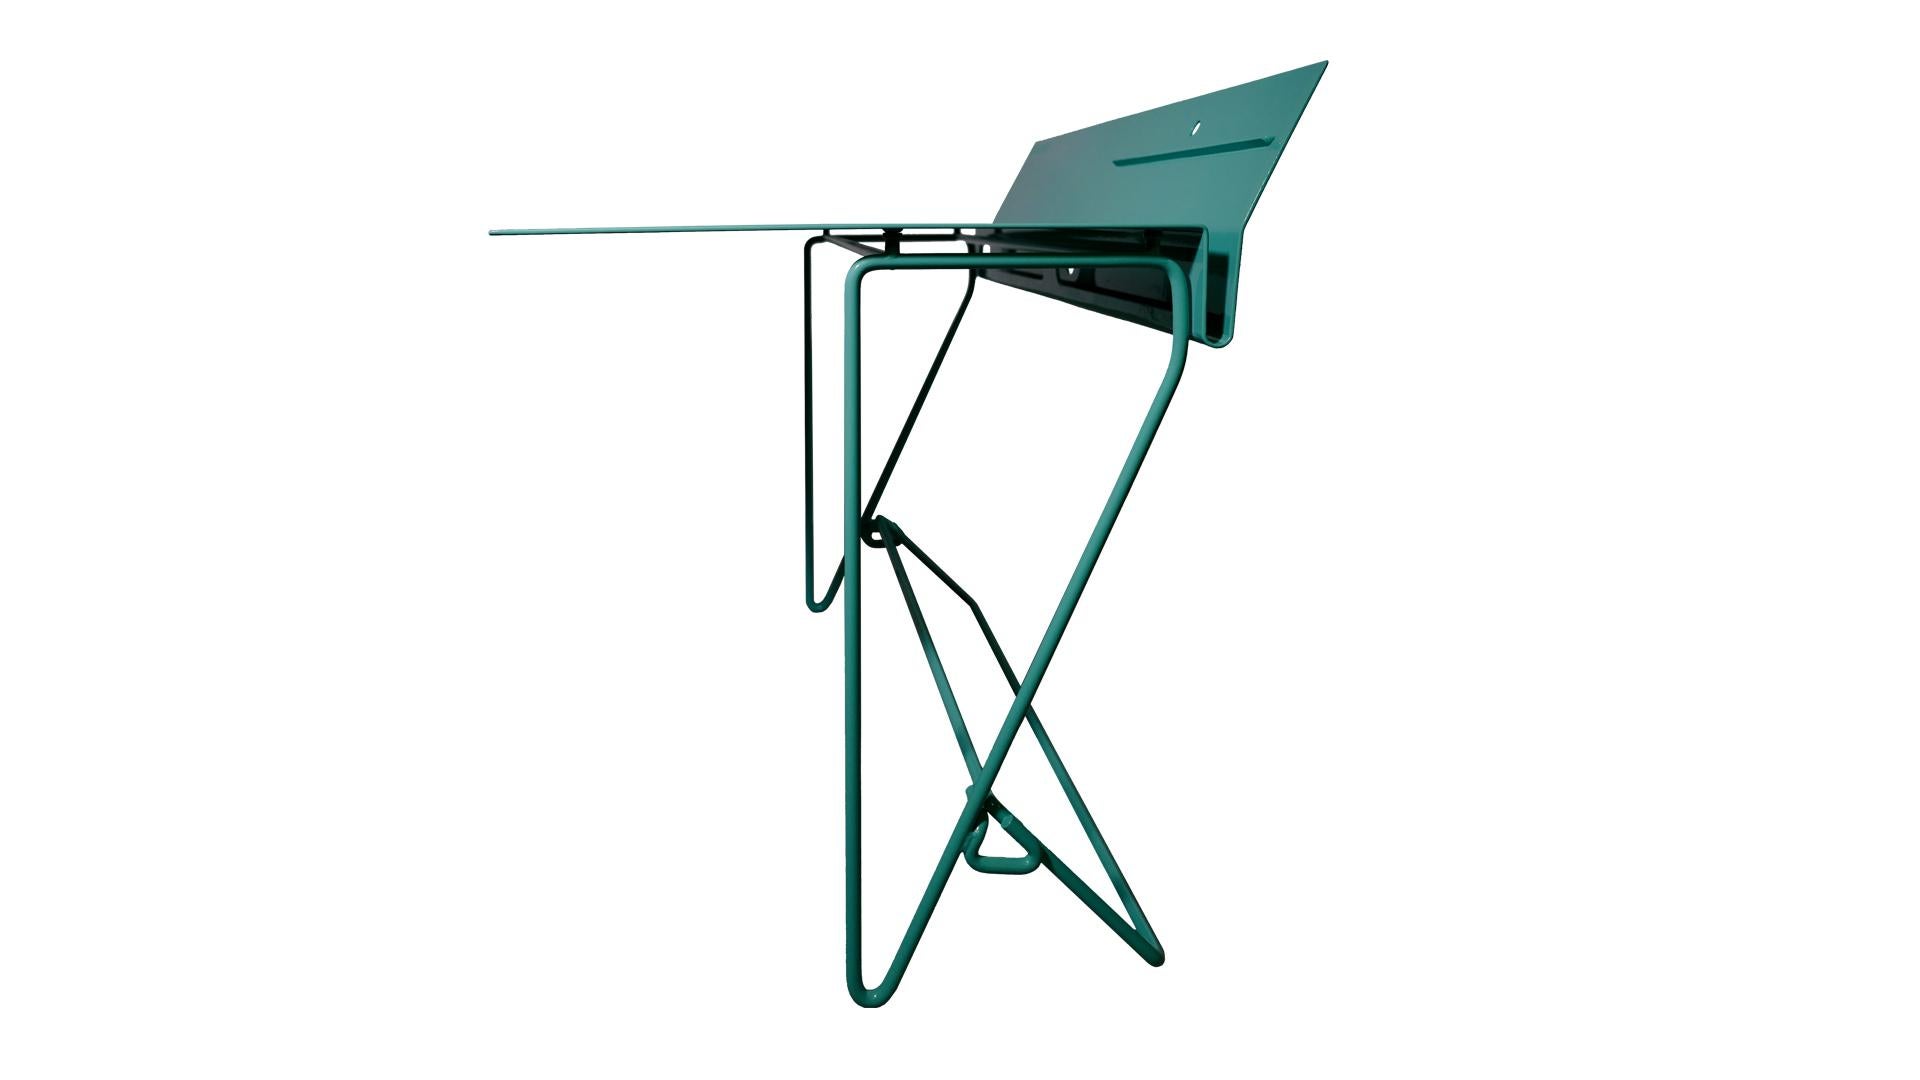 Zeitgenössischer italienischer Metallschreibtisch mit Ablageelementen und Kabellöchern.
 
Monoplano ist ein Schreibtisch, der aus der Beobachtung des Luftfahrtdesigns des 20. Jahrhunderts stammt. Sein Design ist ein durchgehendes Muster mit